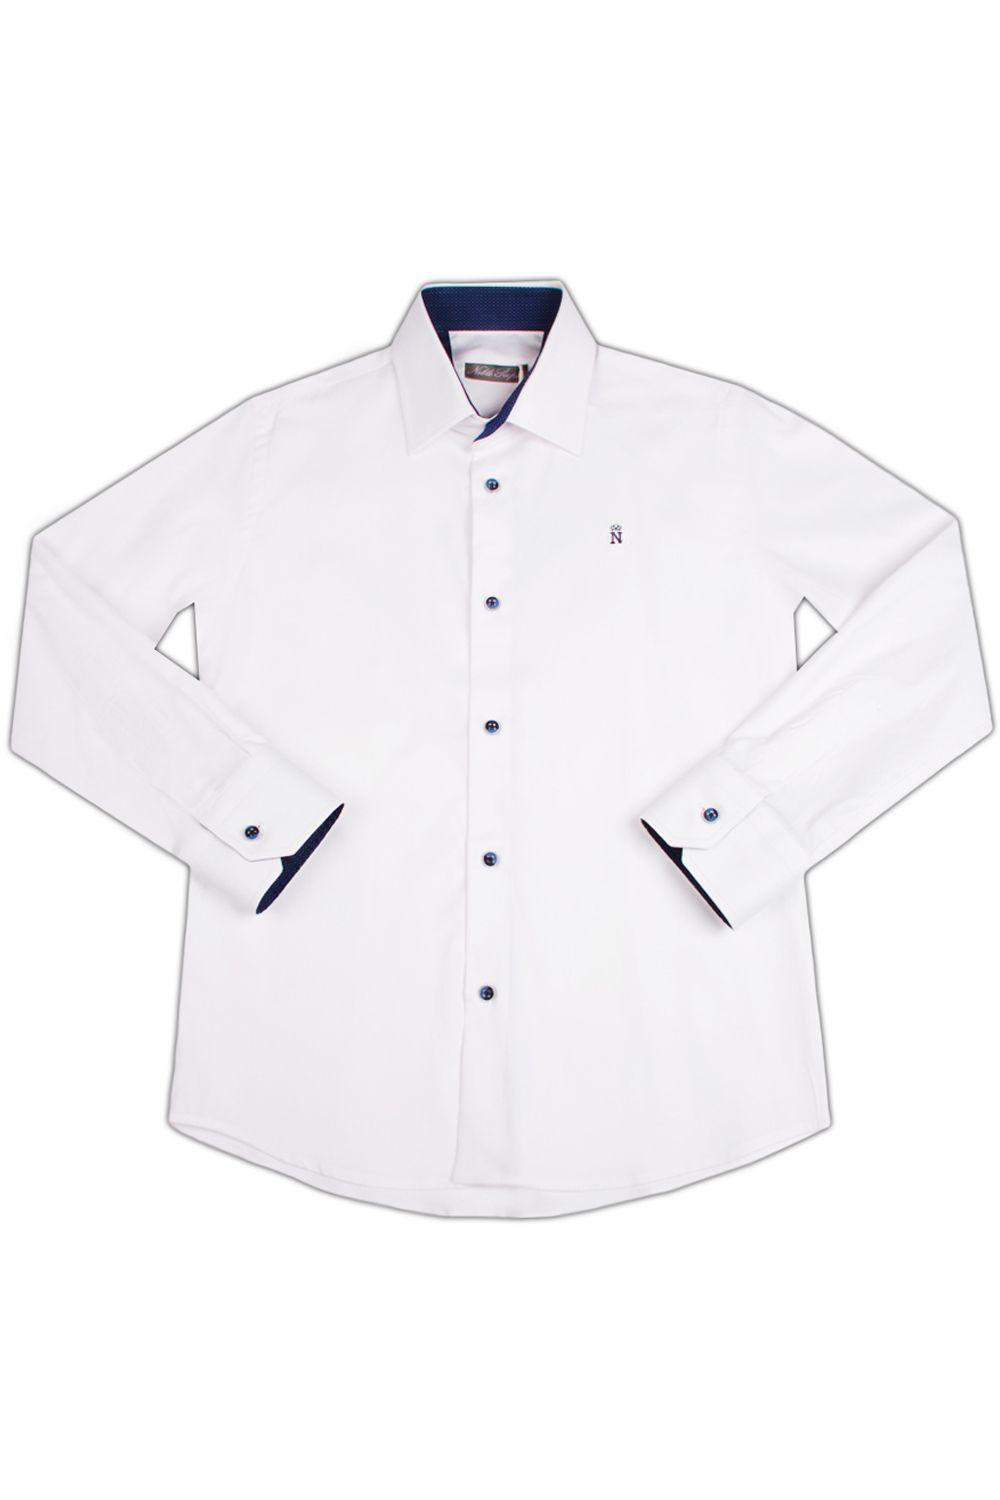 Рубашка Noble People, размер 158, цвет белый 19003-168 - фото 1